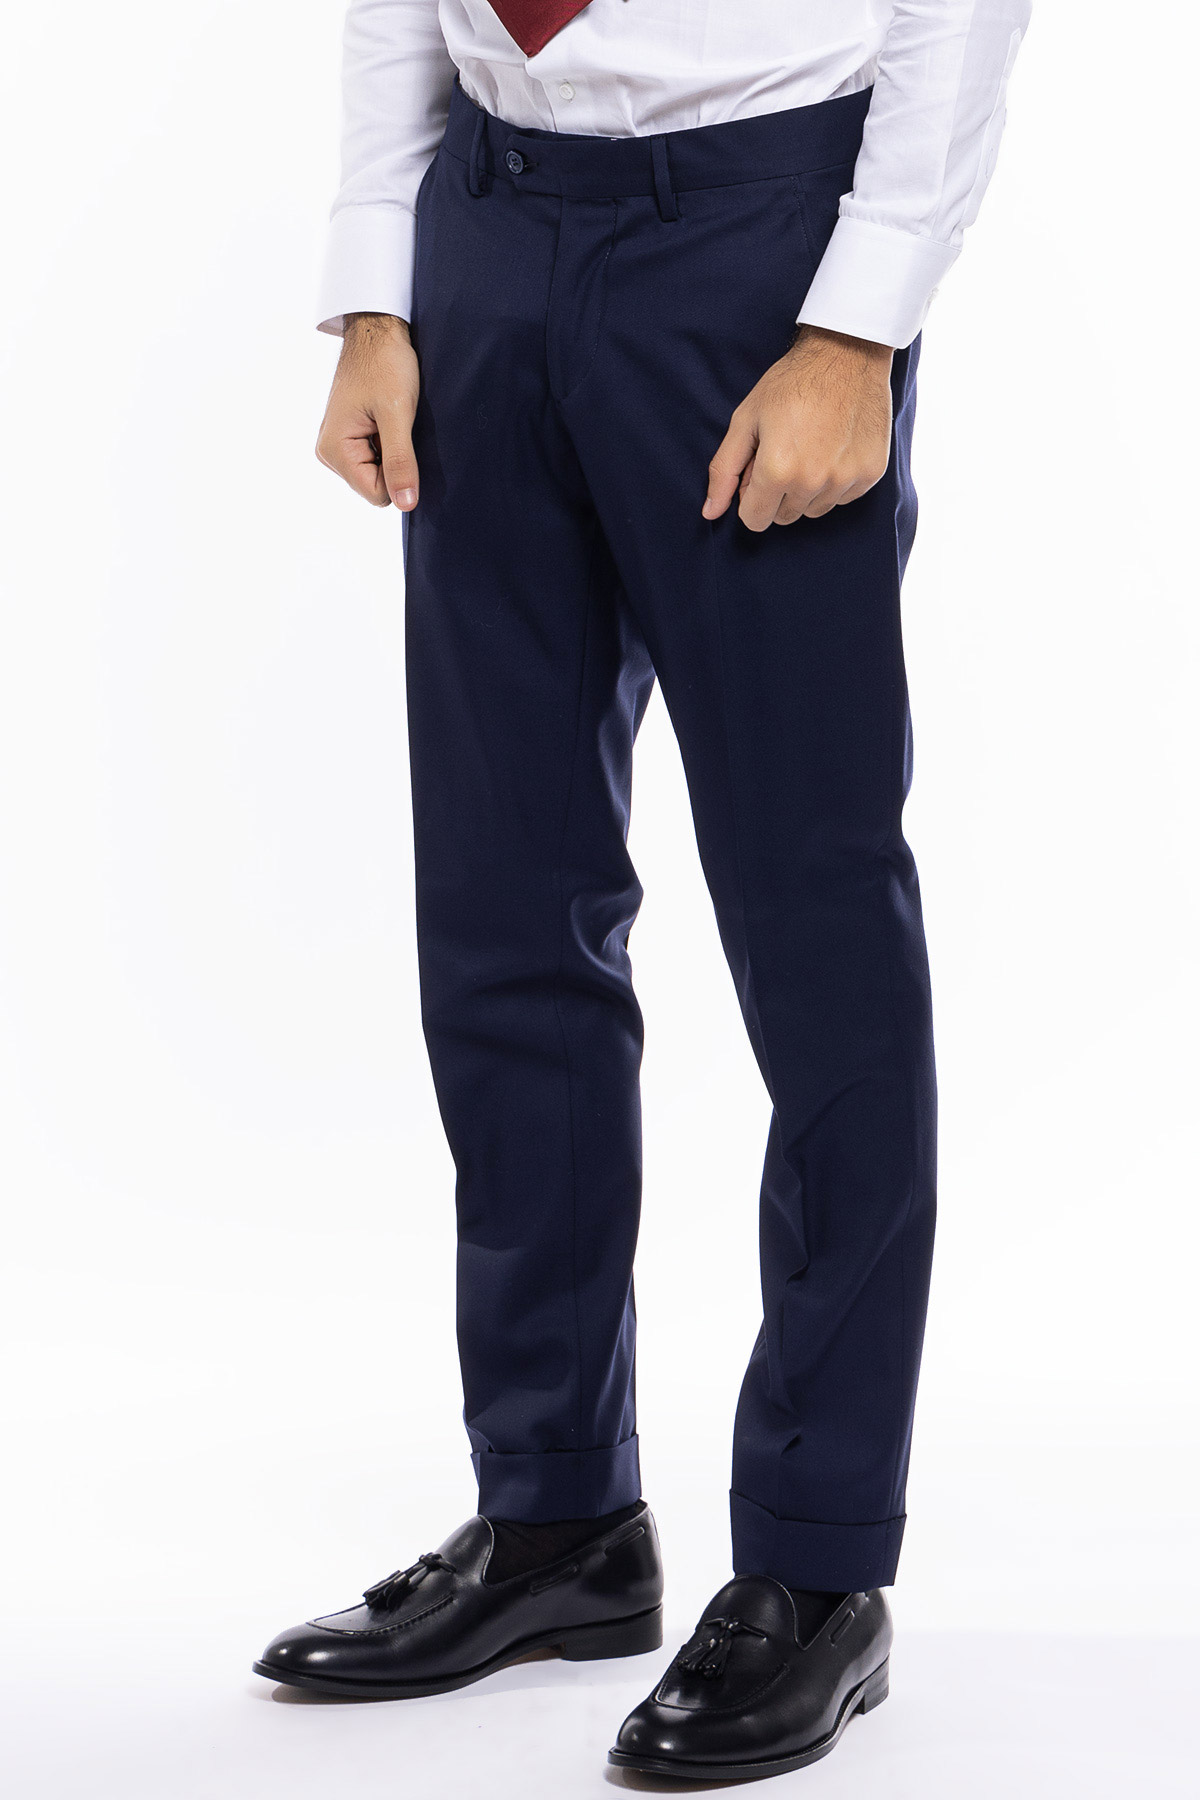 Pantalone uomo blu tasca america in fresco lana super 140's holland e sherry slim fit con risvolto di 5cm